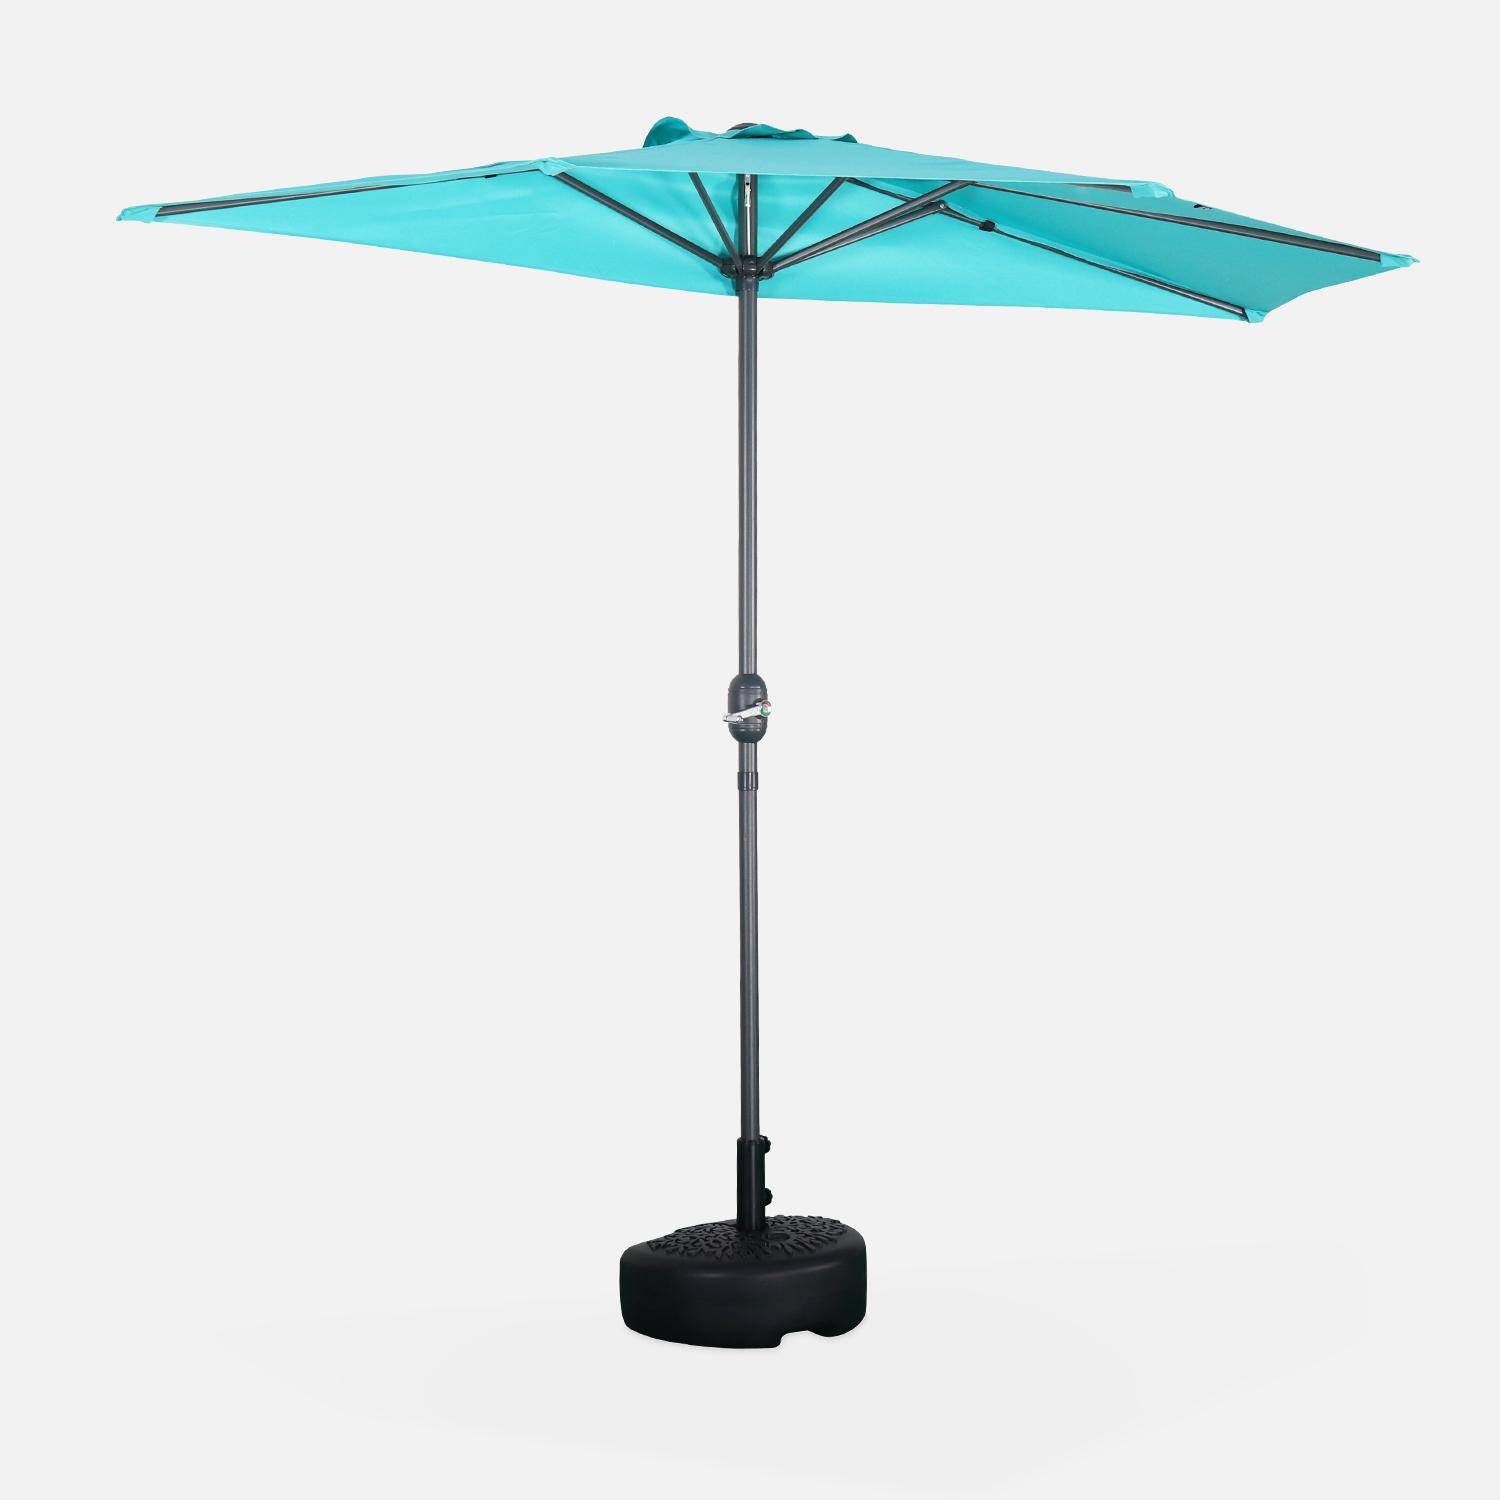  Guarda-chuva de varanda Ø250cm - CALVI - Meio guarda-chuva reto, haste de alumínio com pega de manivela, tecido turquesa Photo1